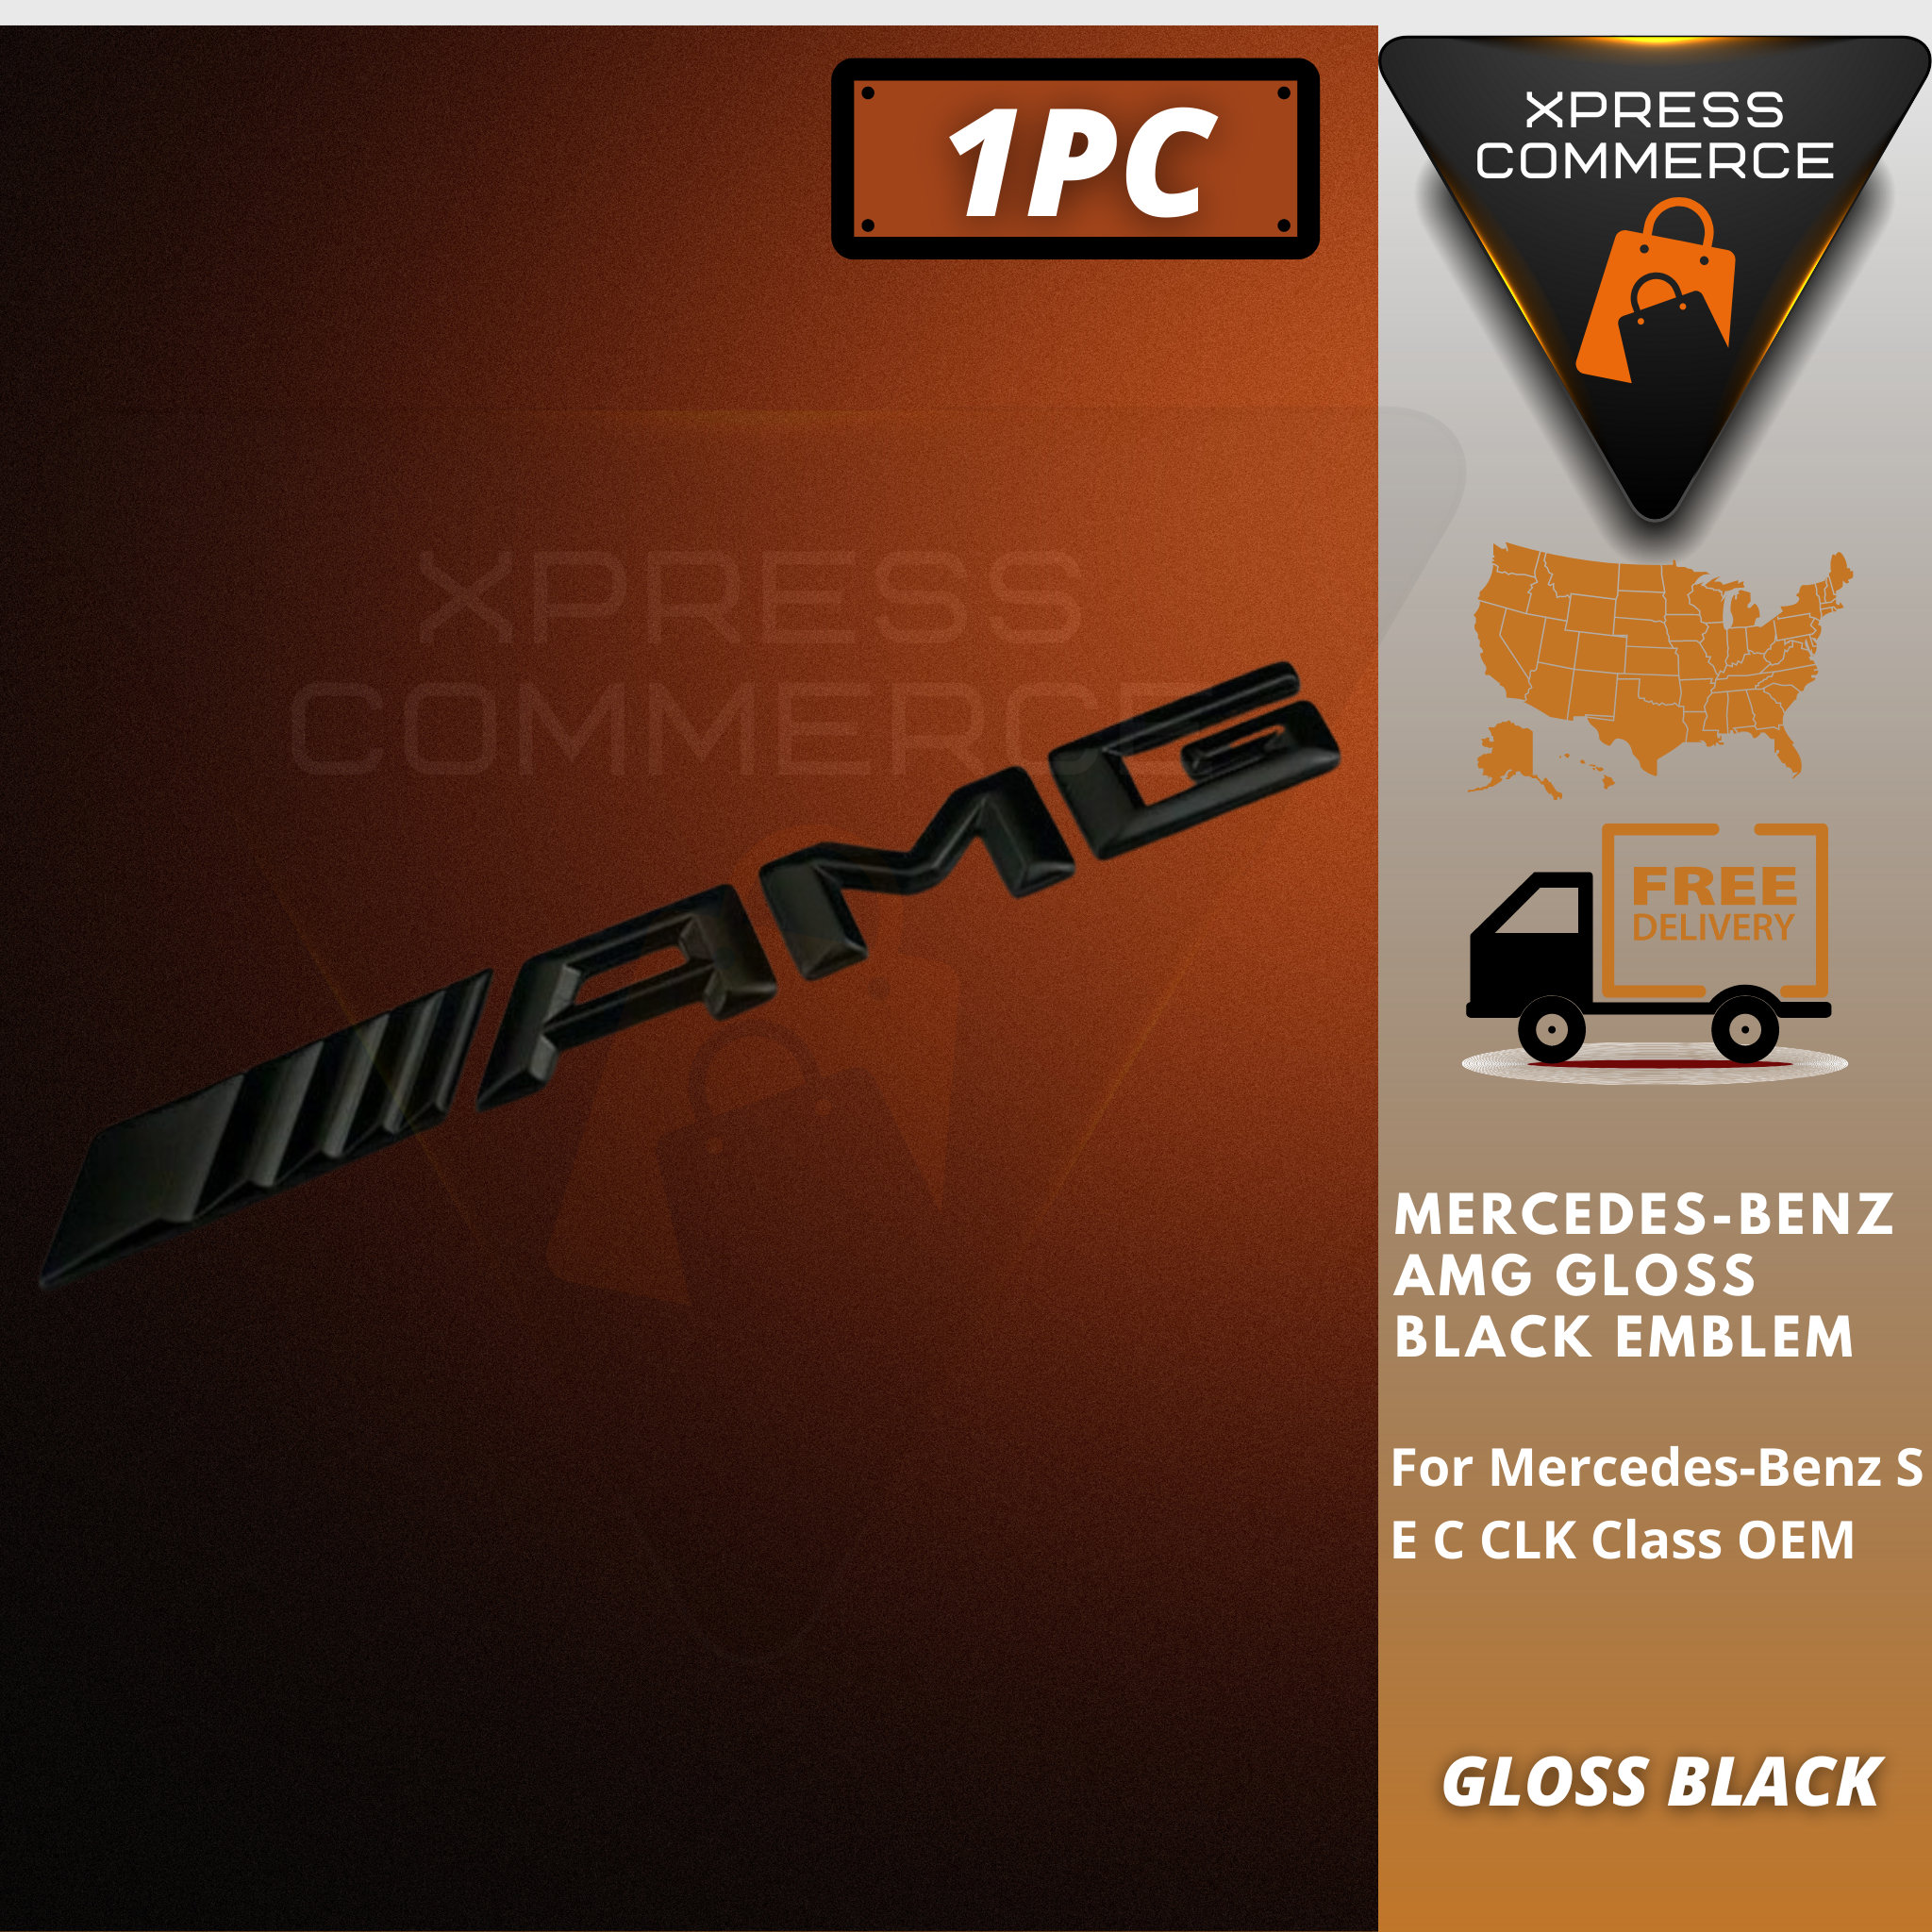 2 x Auto-Aufkleber Metall-Messer-Emblem für schwarze AMG